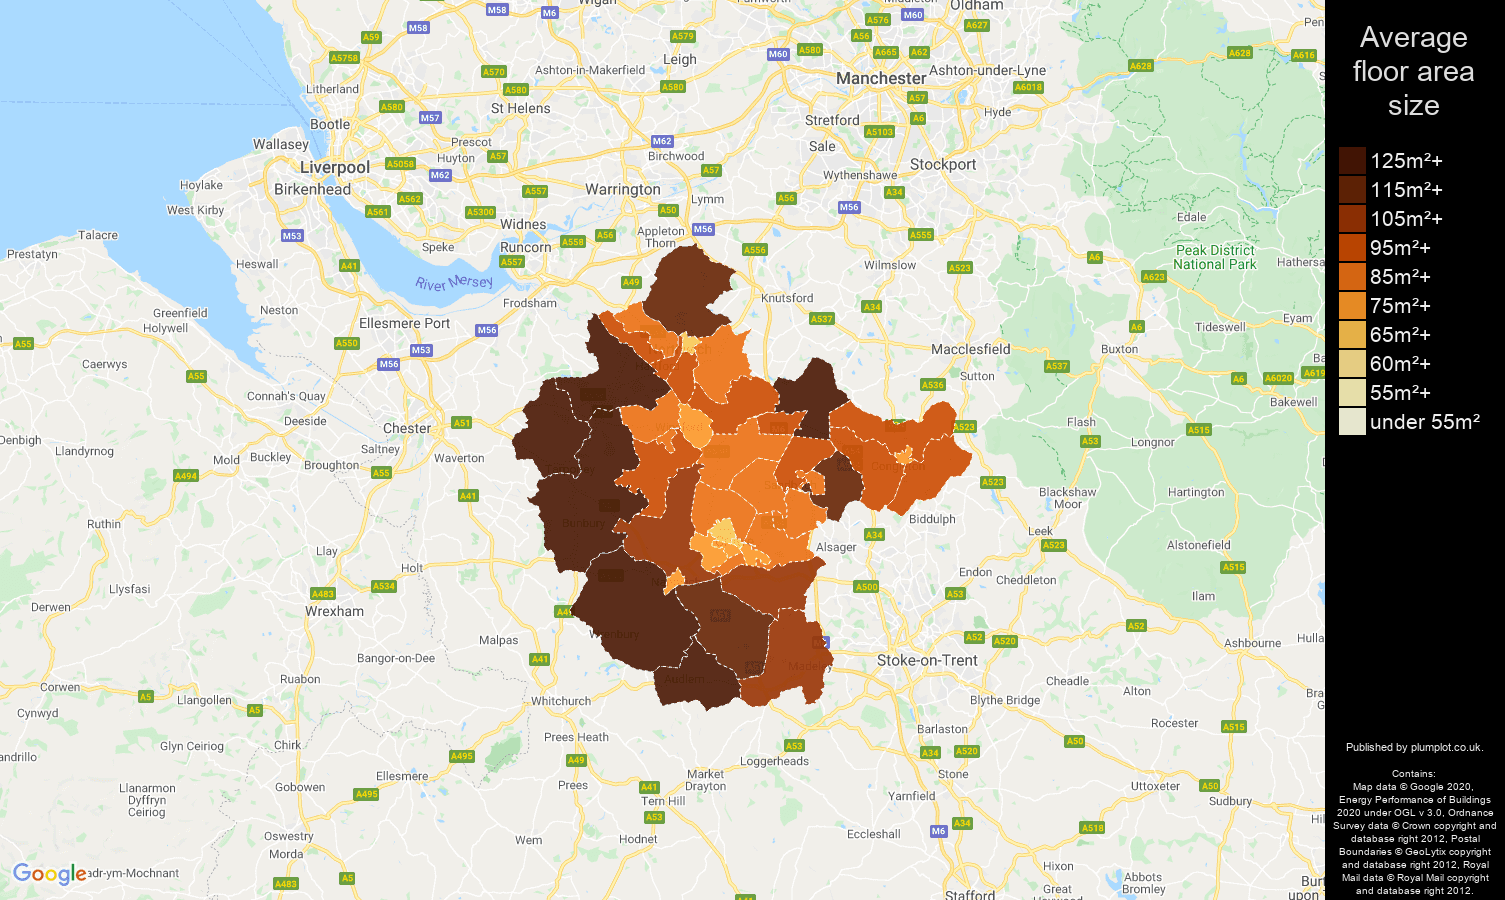 Crewe map of average floor area size of properties